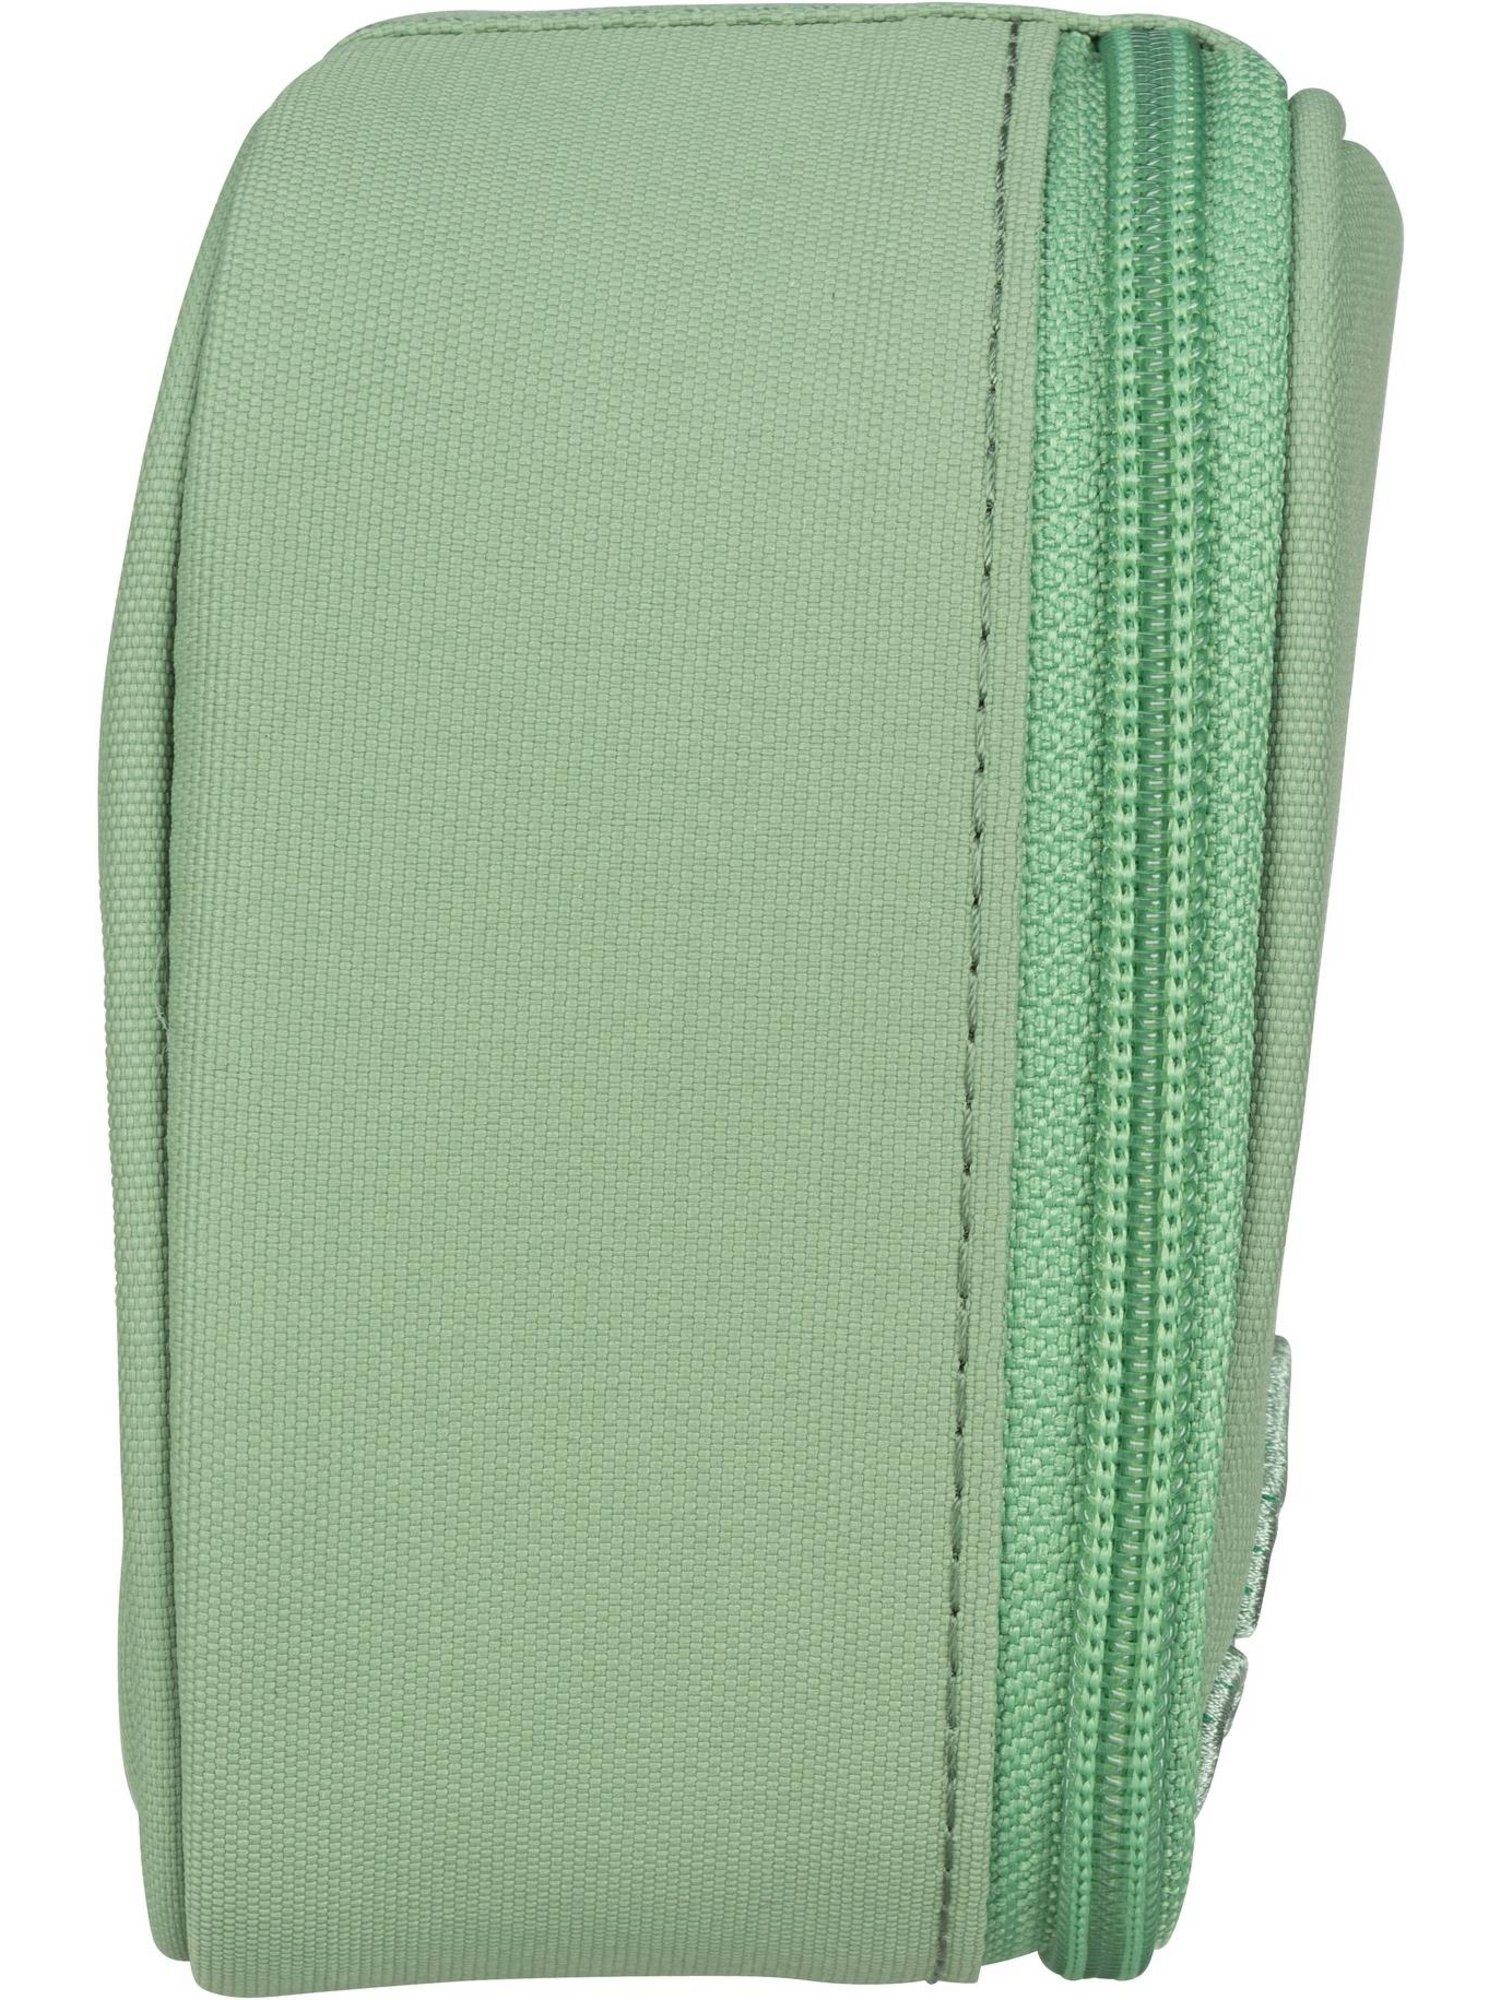 Jade Schlamperbox Edition Federmäppchen Nordic Green satch Satch